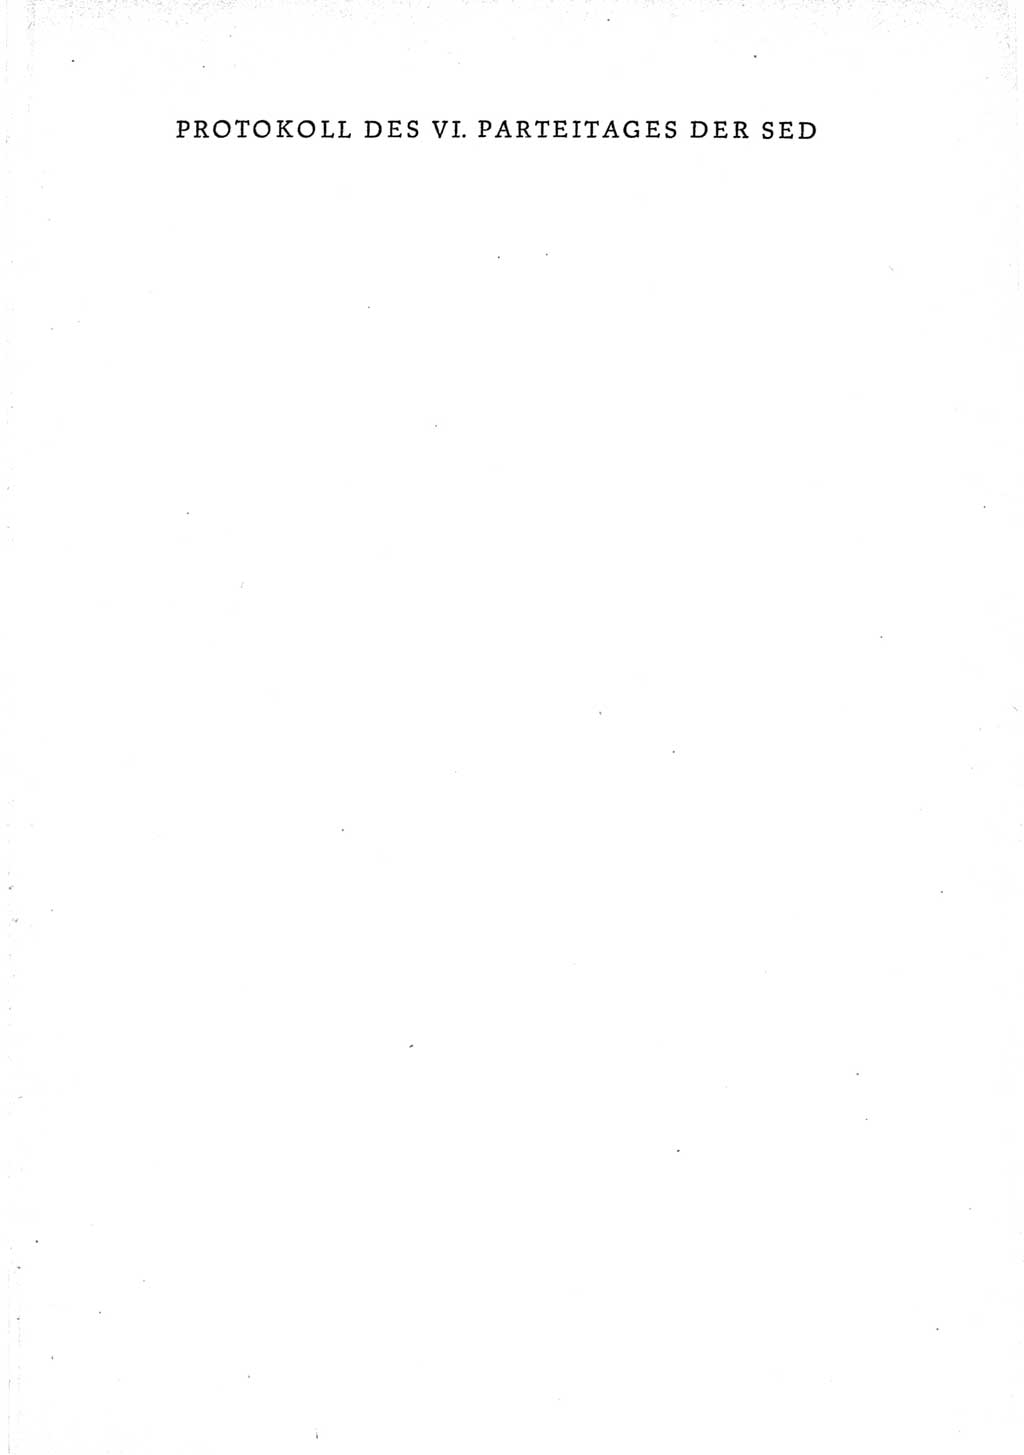 Protokoll der Verhandlungen des Ⅵ. Parteitages der Sozialistischen Einheitspartei Deutschlands (SED) [Deutsche Demokratische Republik (DDR)] 1963, Band Ⅱ, Seite 1 (Prot. Verh. Ⅵ. PT SED DDR 1963, Bd. Ⅱ, S. 1)